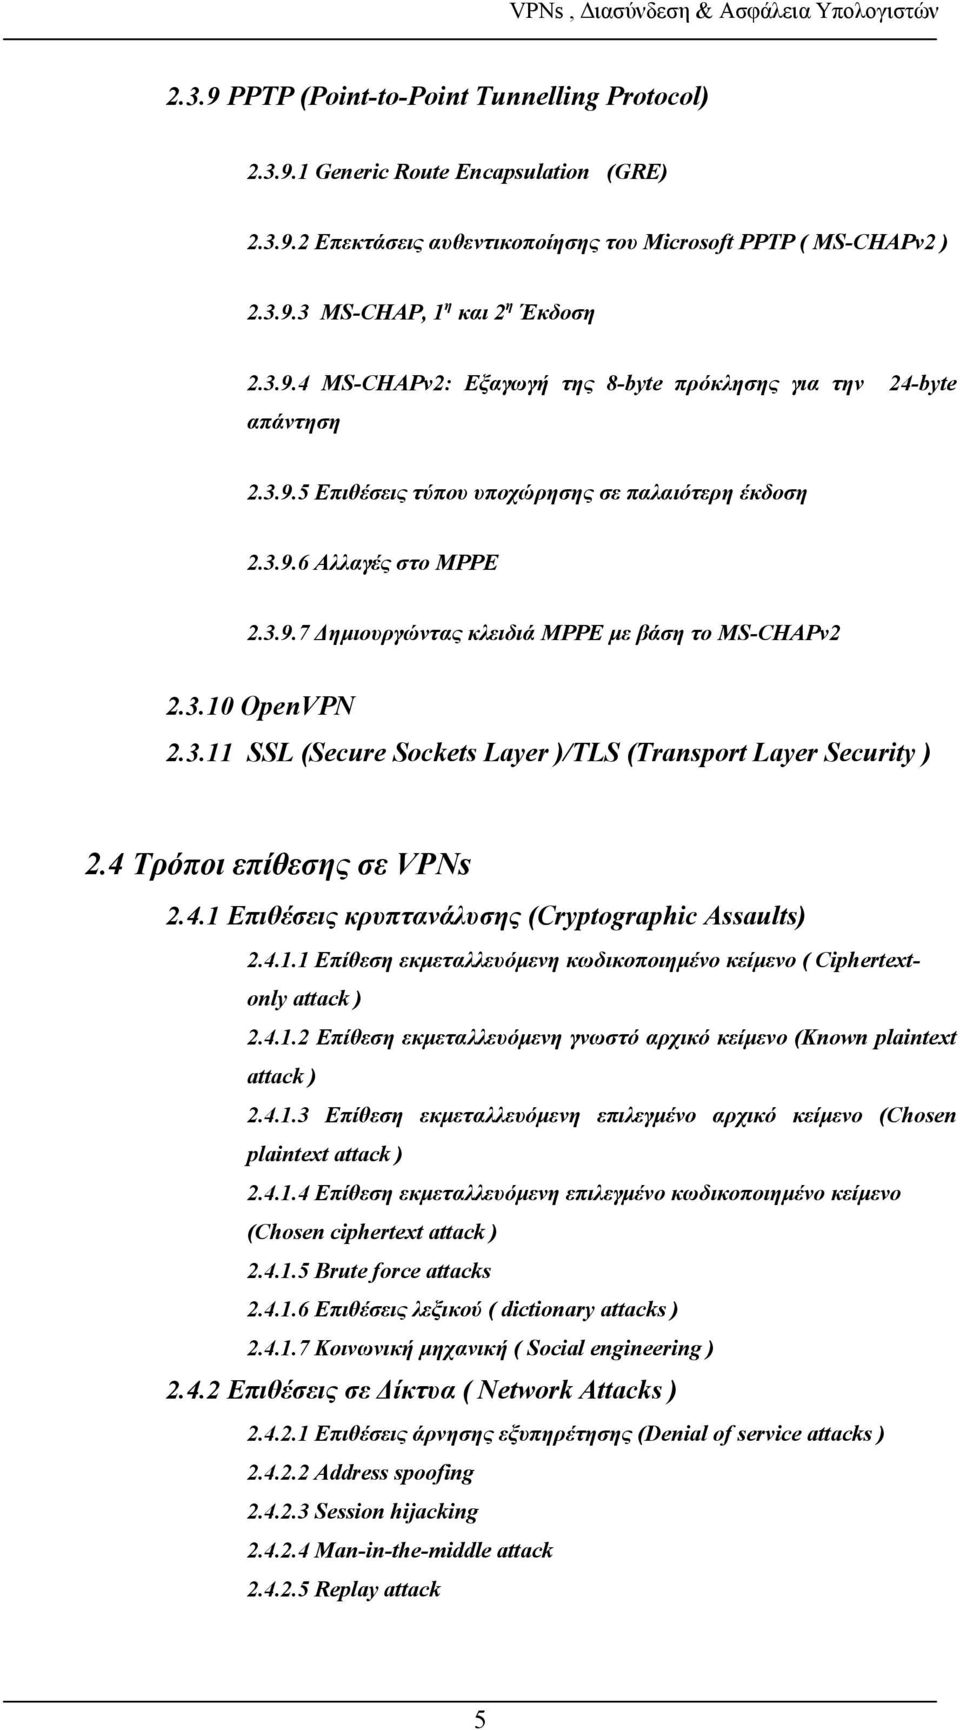 4 Τρόποι επίθεσης σε VPNs 2.4.1 Επιθέσεις κρυπτανάλυσης (Cryptographic Assaults) 2.4.1.1 Επίθεση εκμεταλλευόμενη κωδικοποιημένο κείμενο ( Ciphertextonly attack ) 2.4.1.2 Επίθεση εκμεταλλευόμενη γνωστό αρχικό κείμενο (Known plaintext attack ) 2.